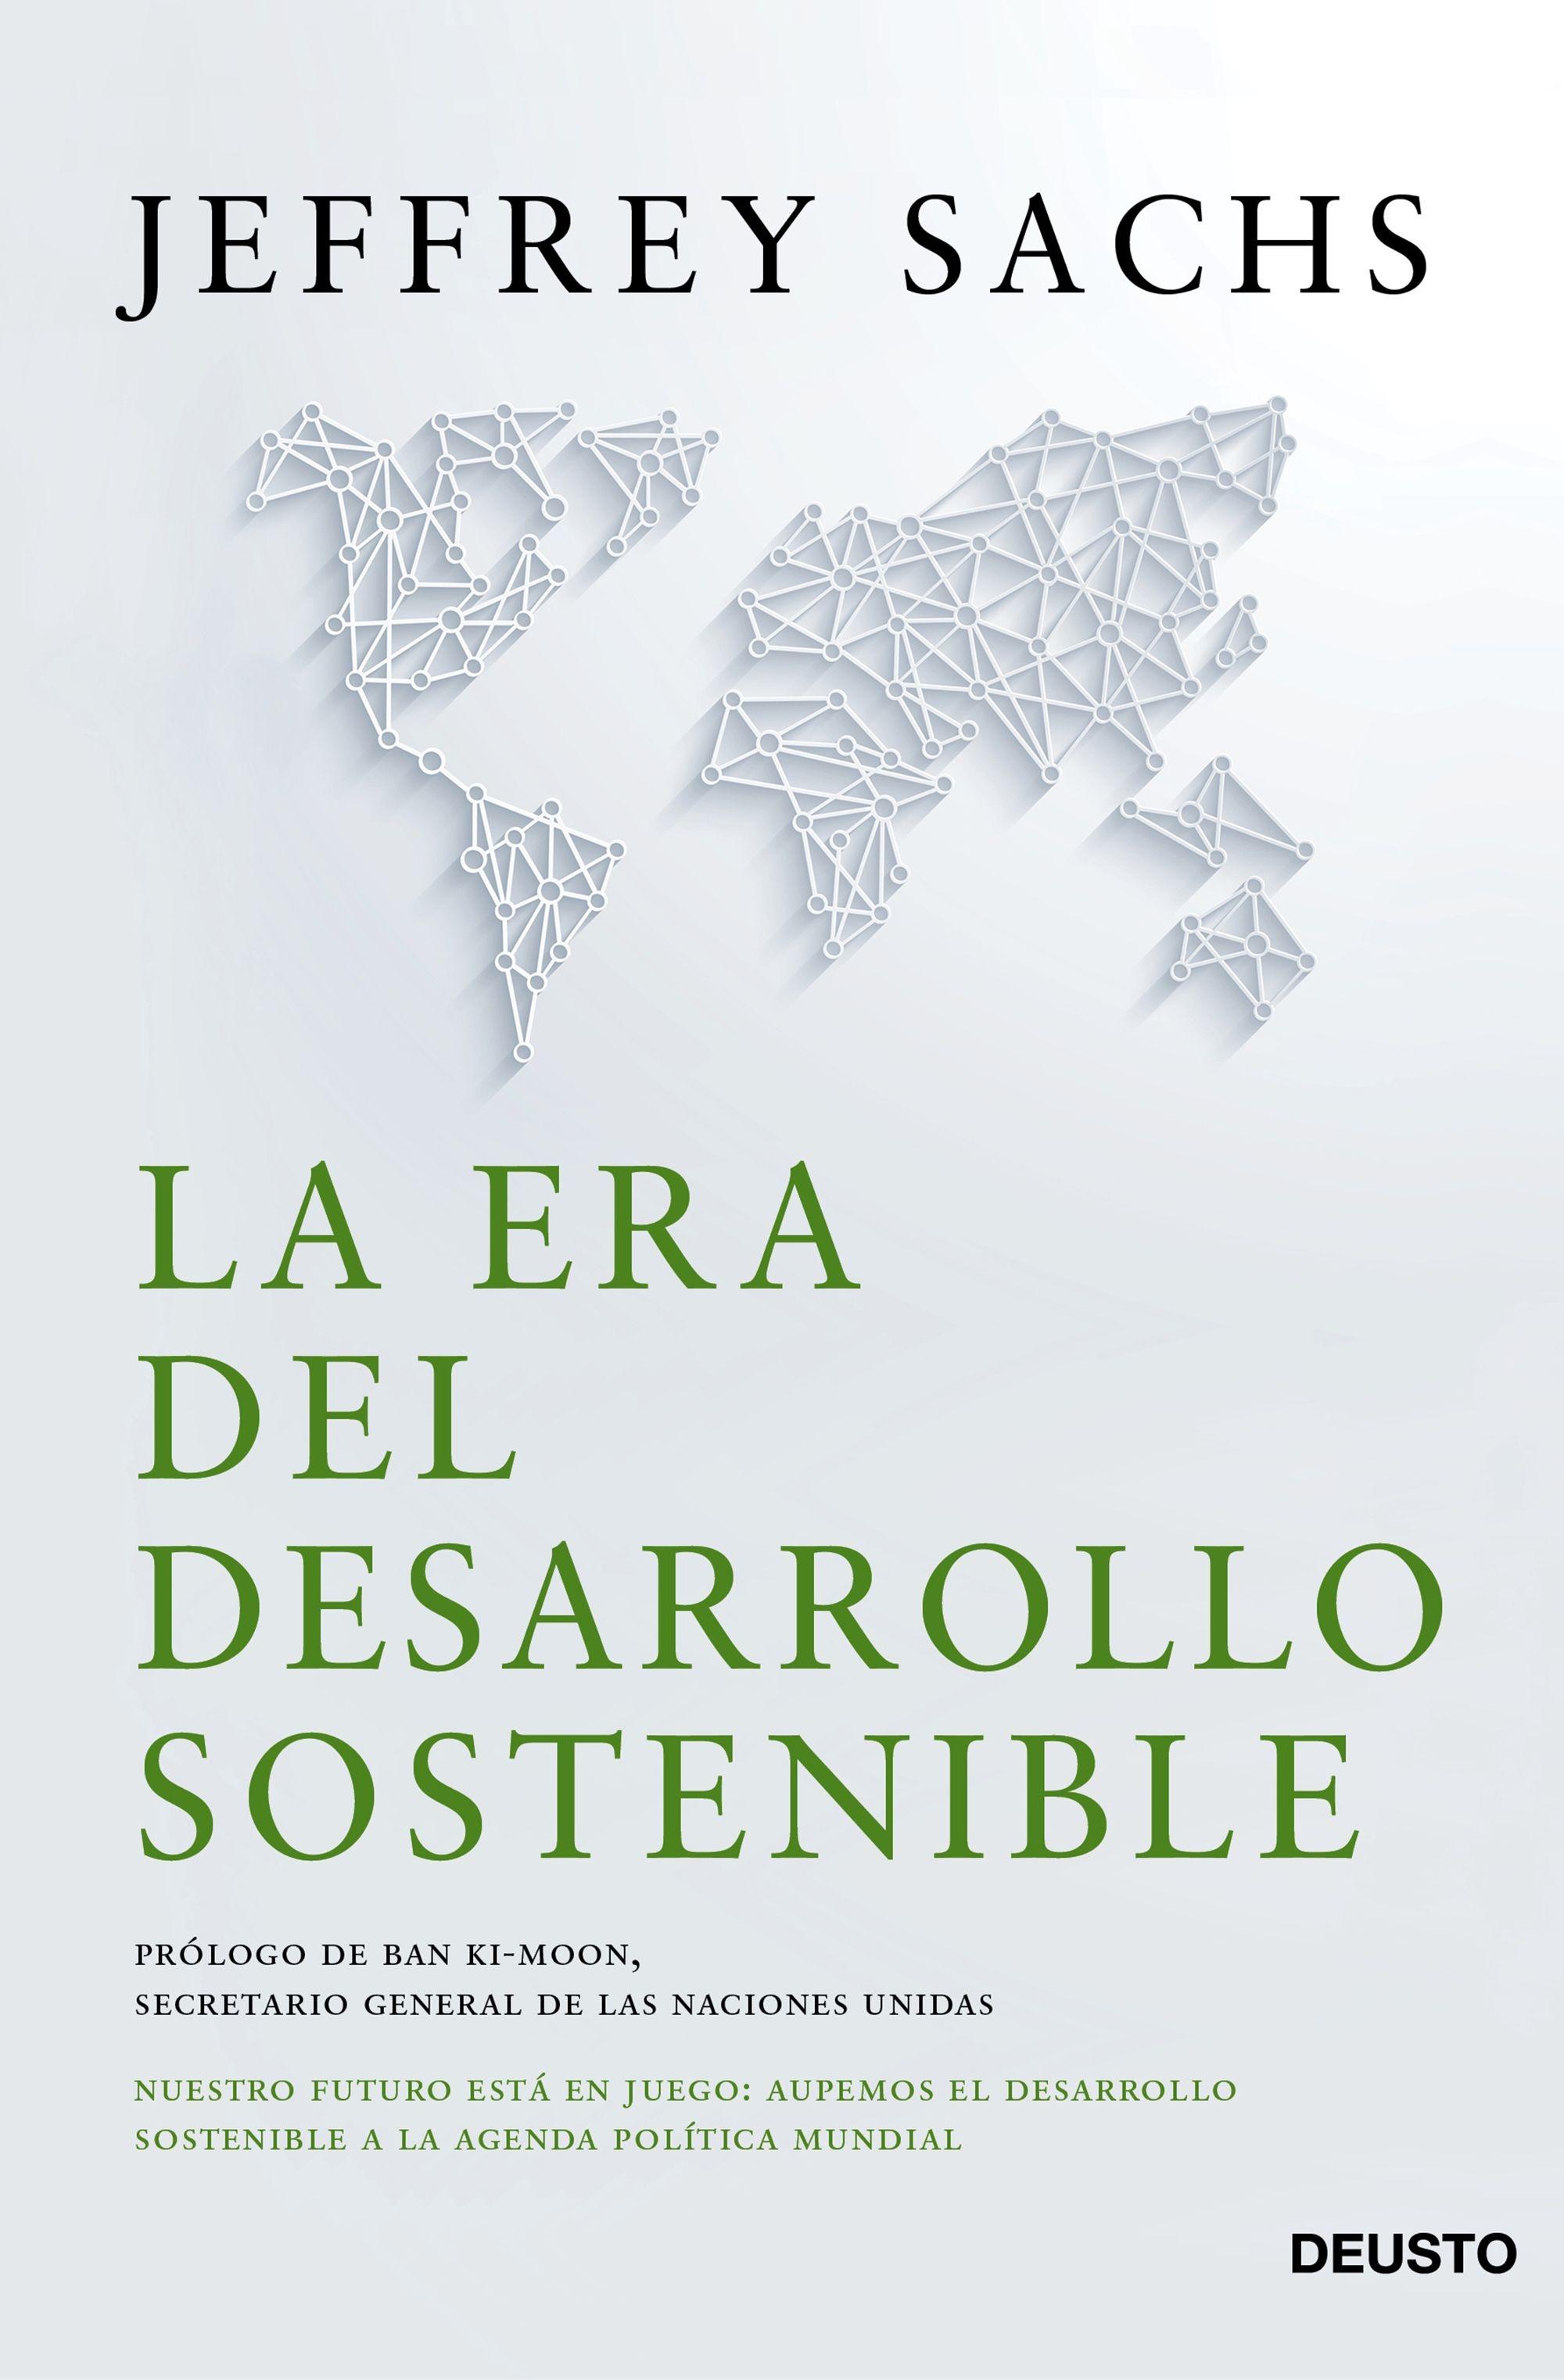 La Era del Desarrollo Sostenible "Nuestro Futuro Está en Juego: Incorporemos el Desarrollo Sostenible a La"